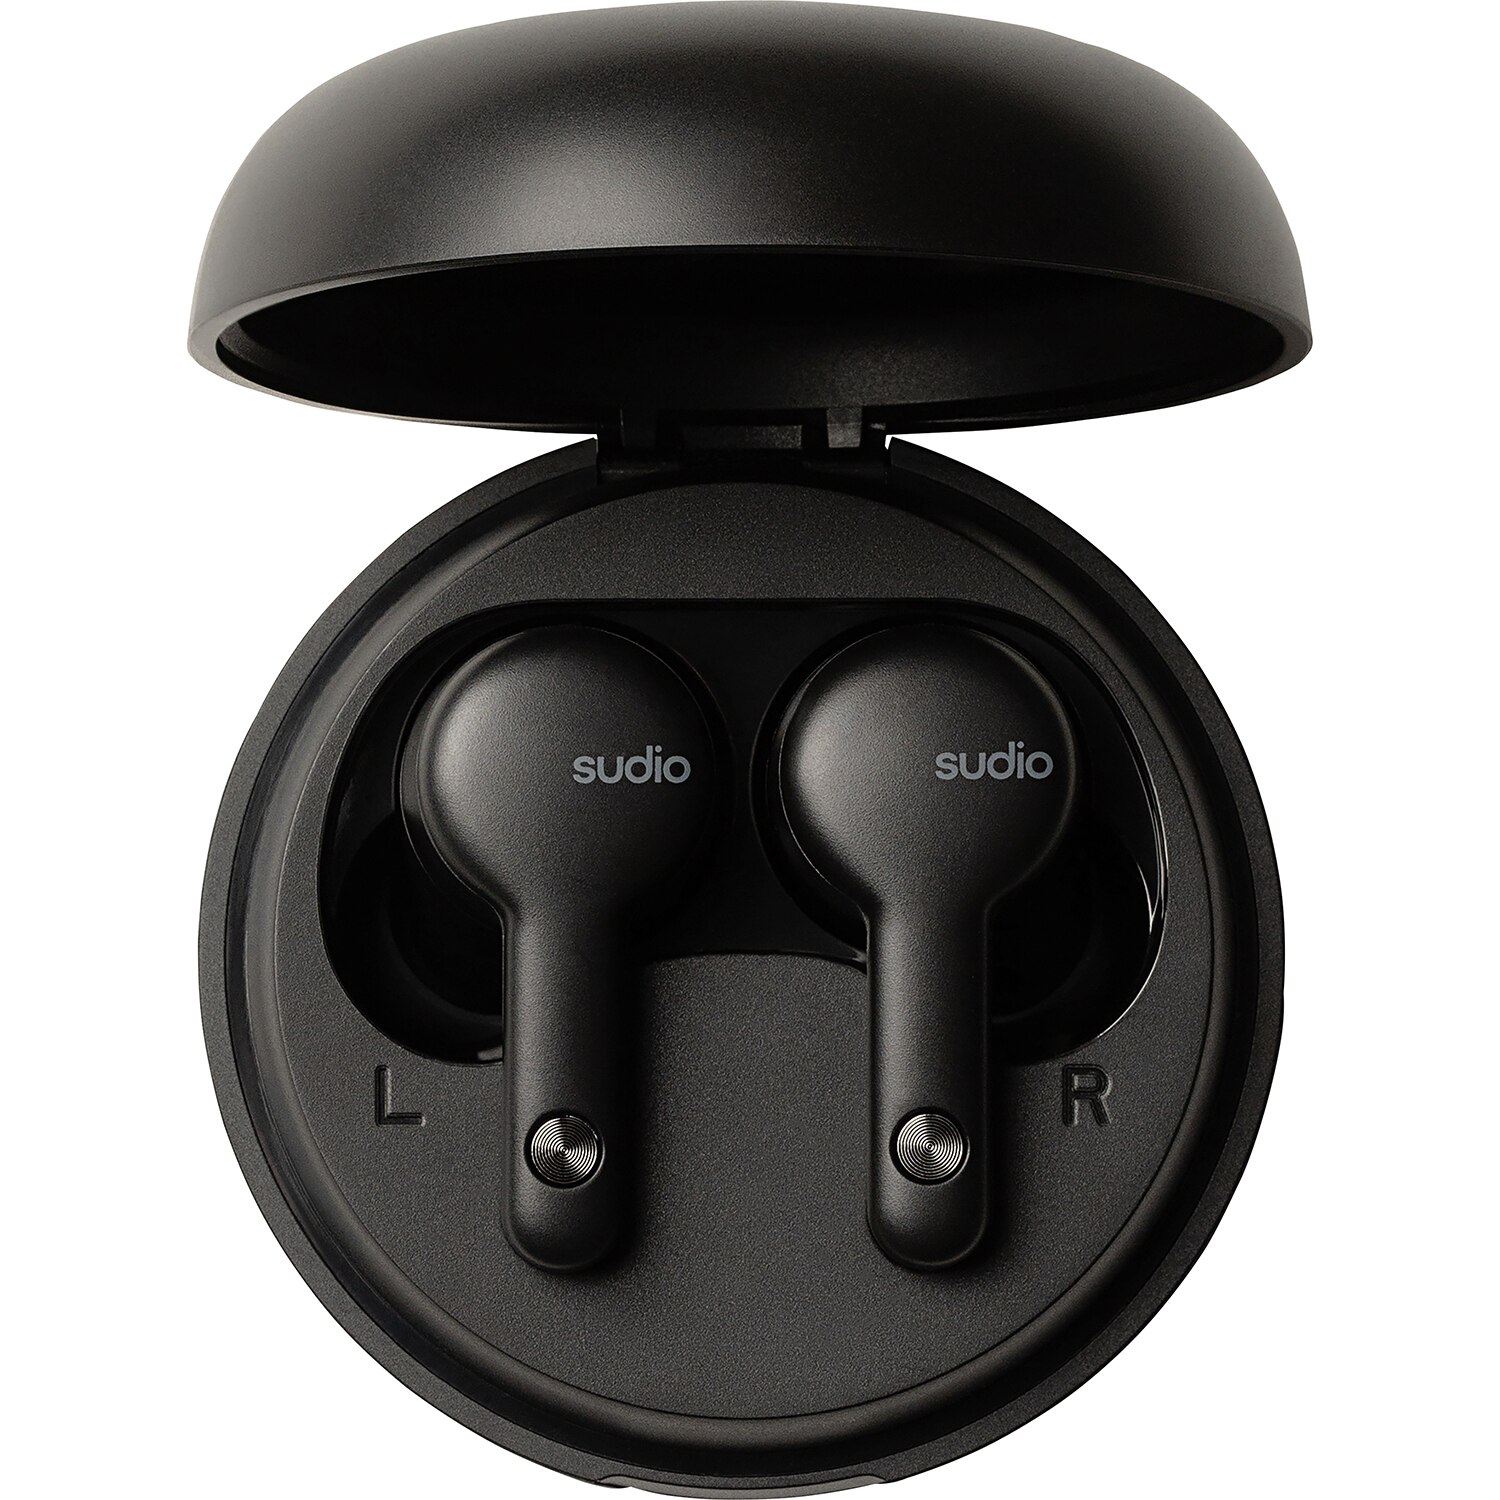 Sudio A2 True Wireless Earbuds, Black